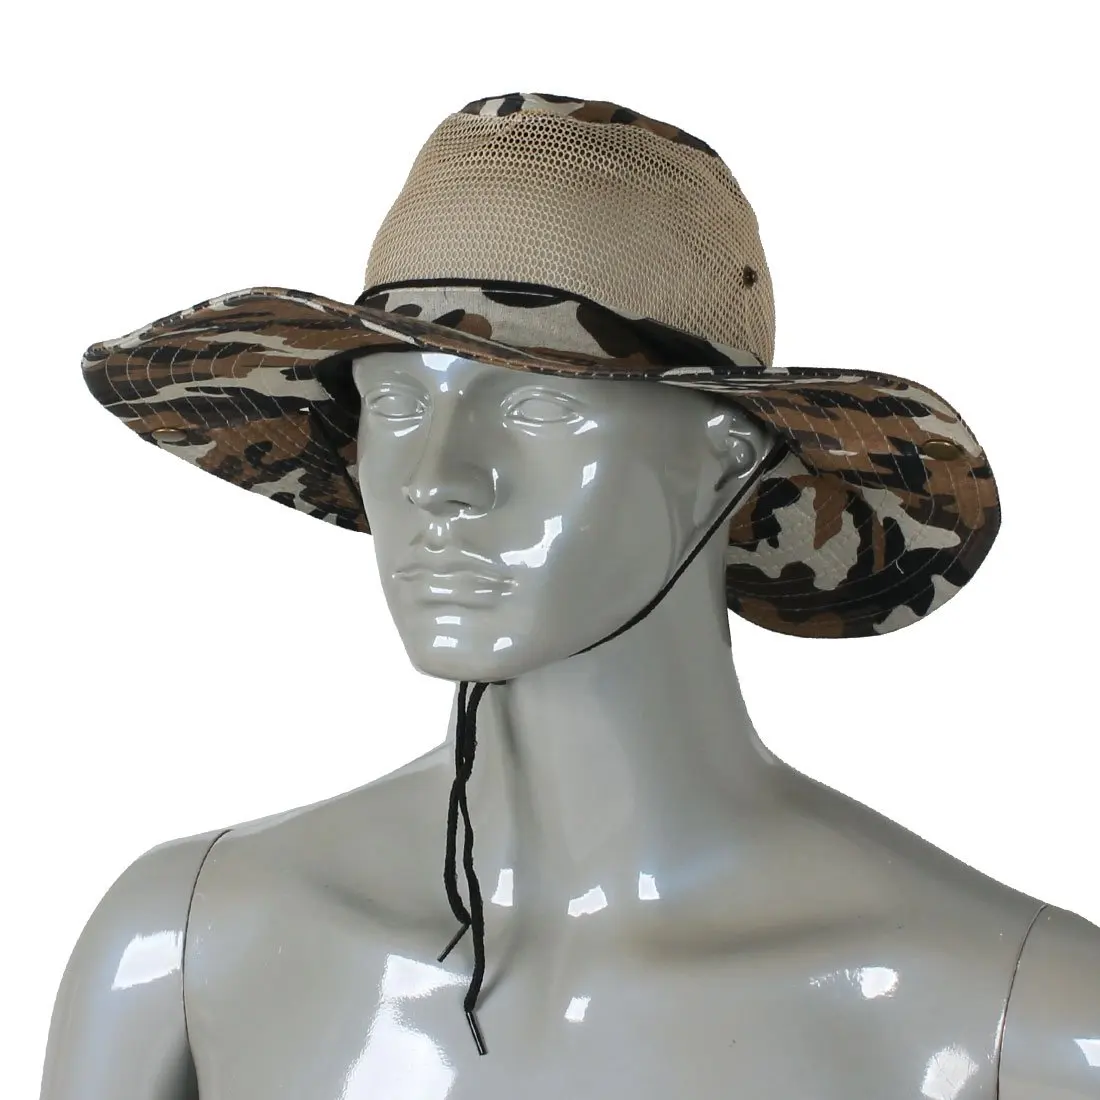 سوبر بيع الرجال واسعة كامل حافة التمويه شبكة تصميم الصيد المشي قبعة كاب